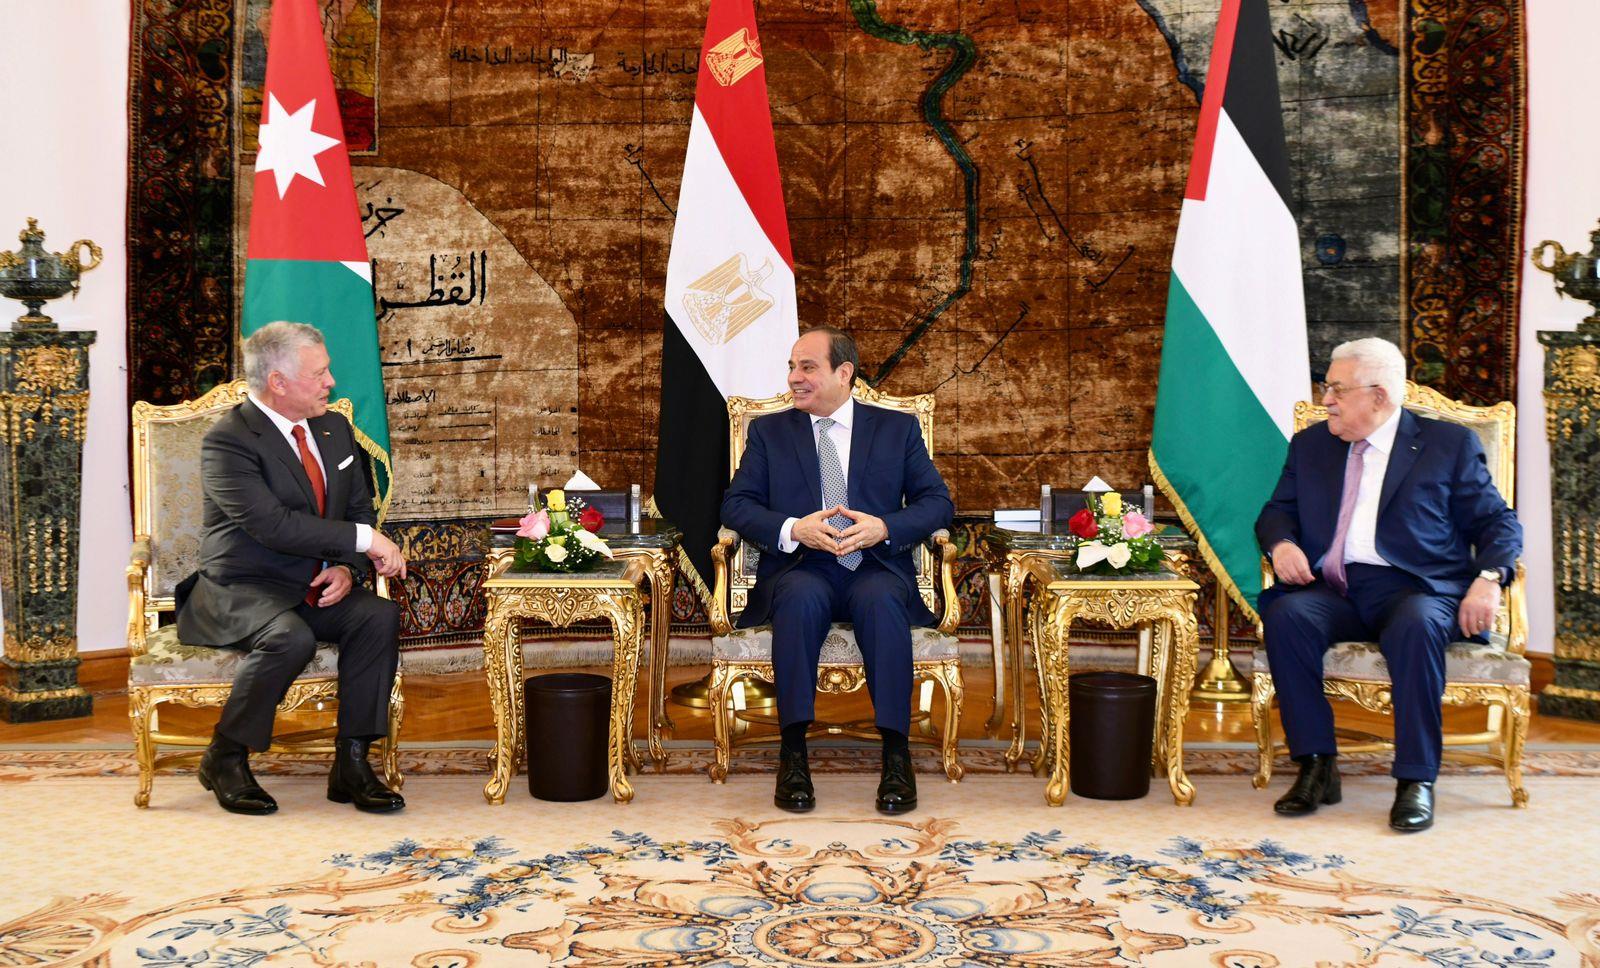 انطلاق أعمال القمة الثلاثية المصرية الأردنية الفلسطينية بالاتحادية